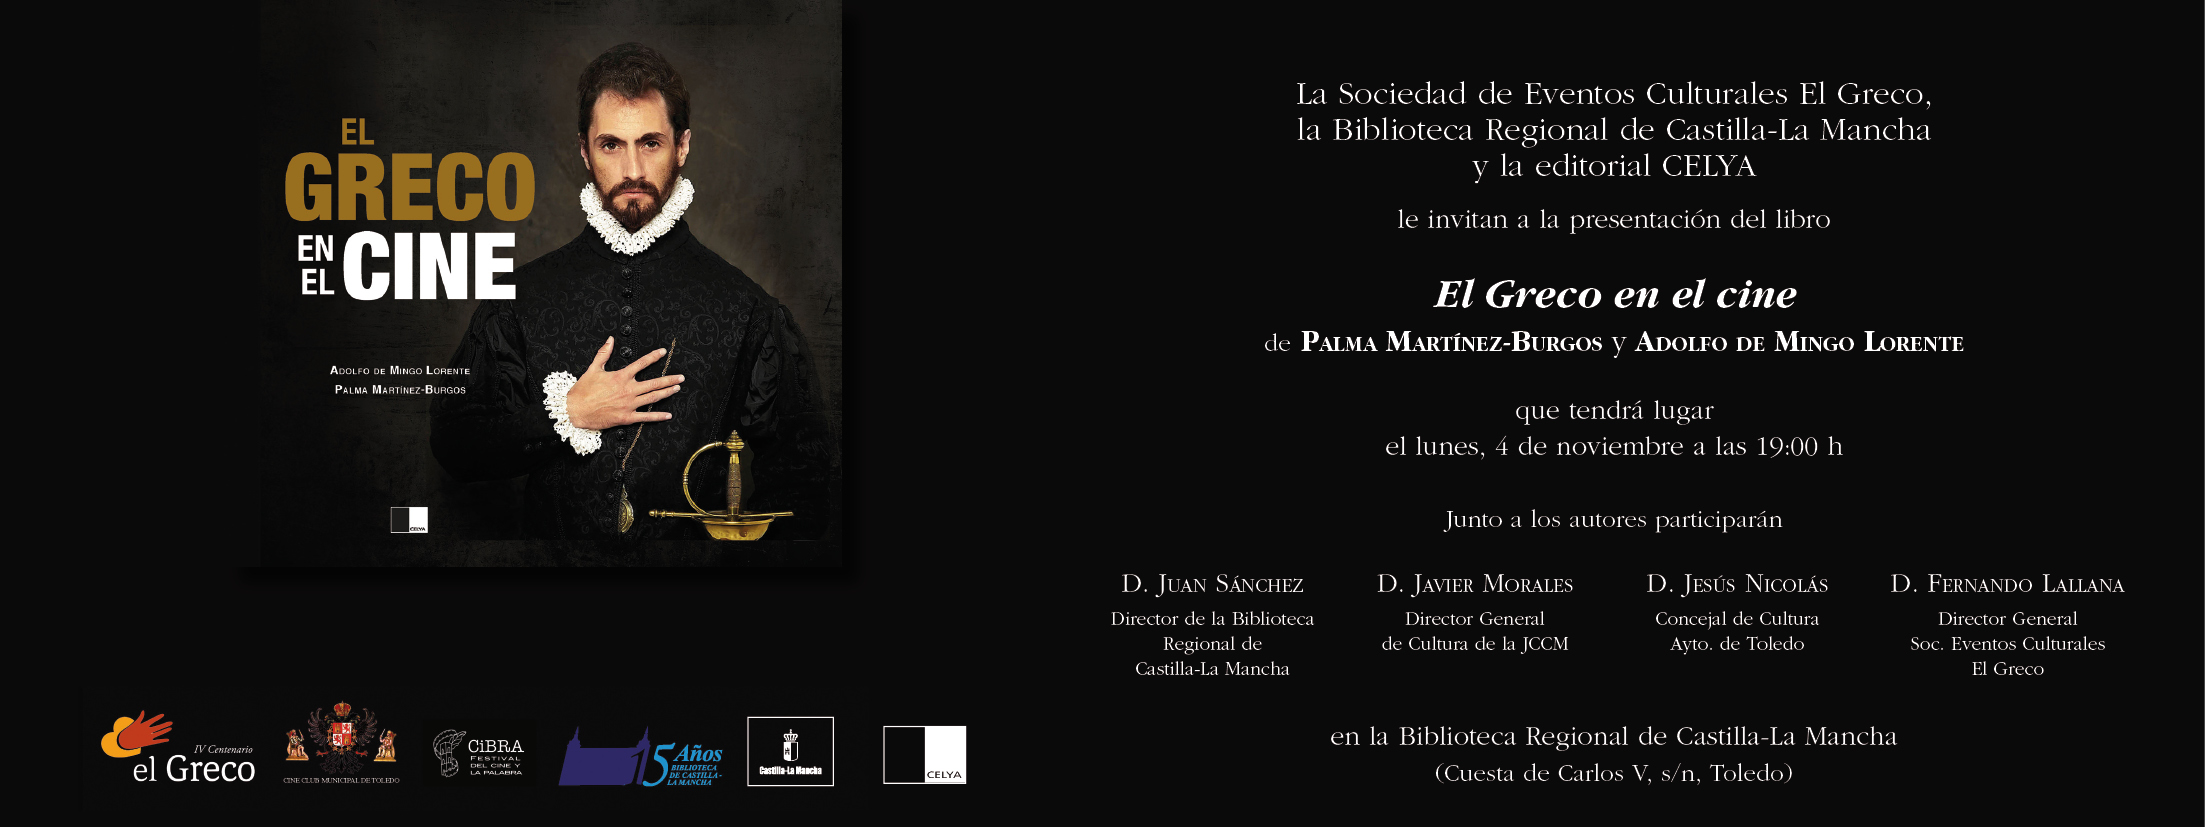 Invitación-El-Greco-en-el-cine